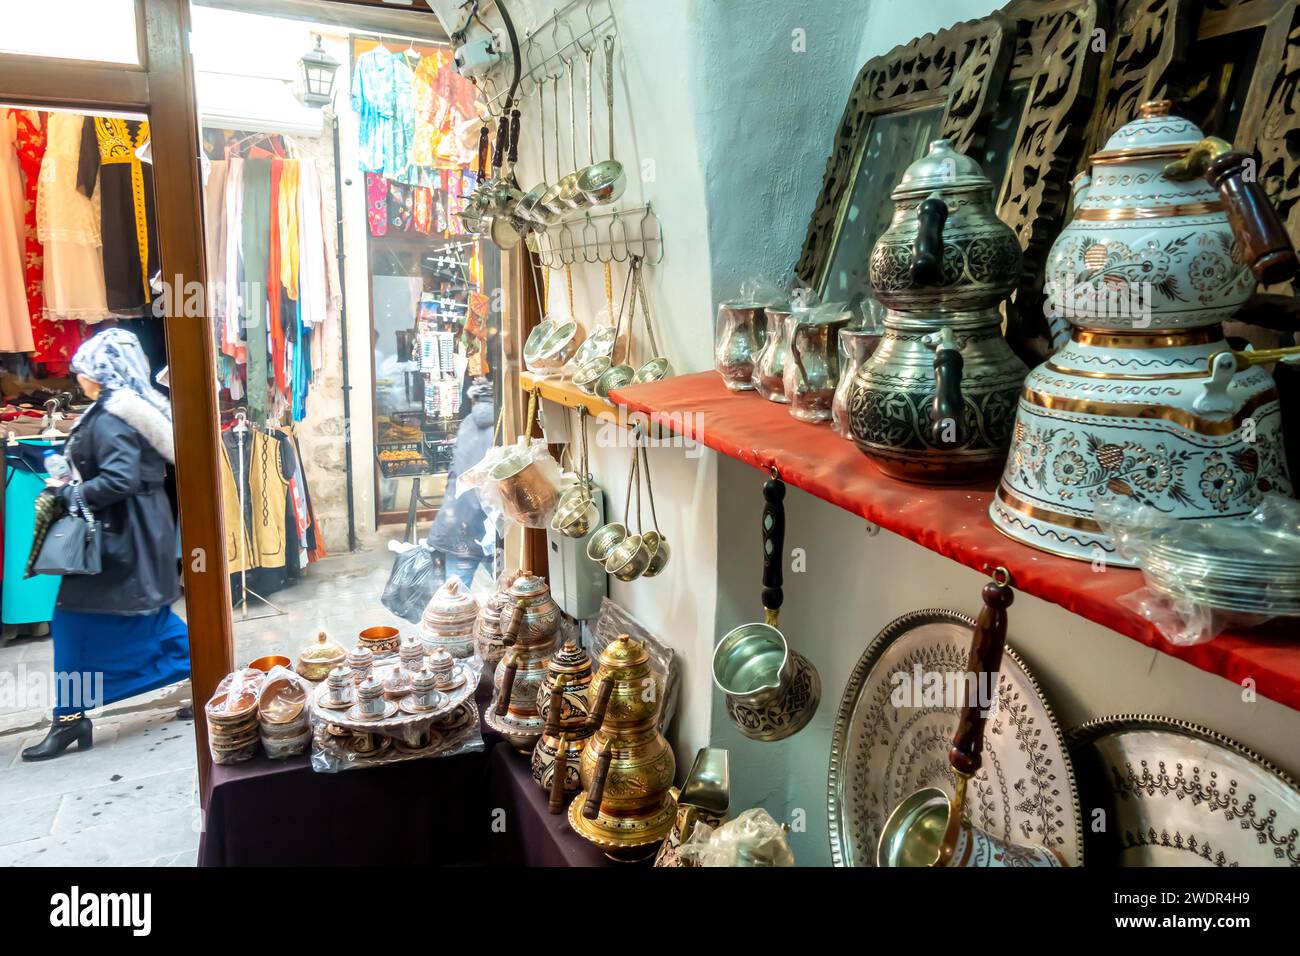 Théières traditionnelles Mardin, cafetières, théières, théière, stand de cuisine magasin de stalle dans Mardin marché Turquie Banque D'Images